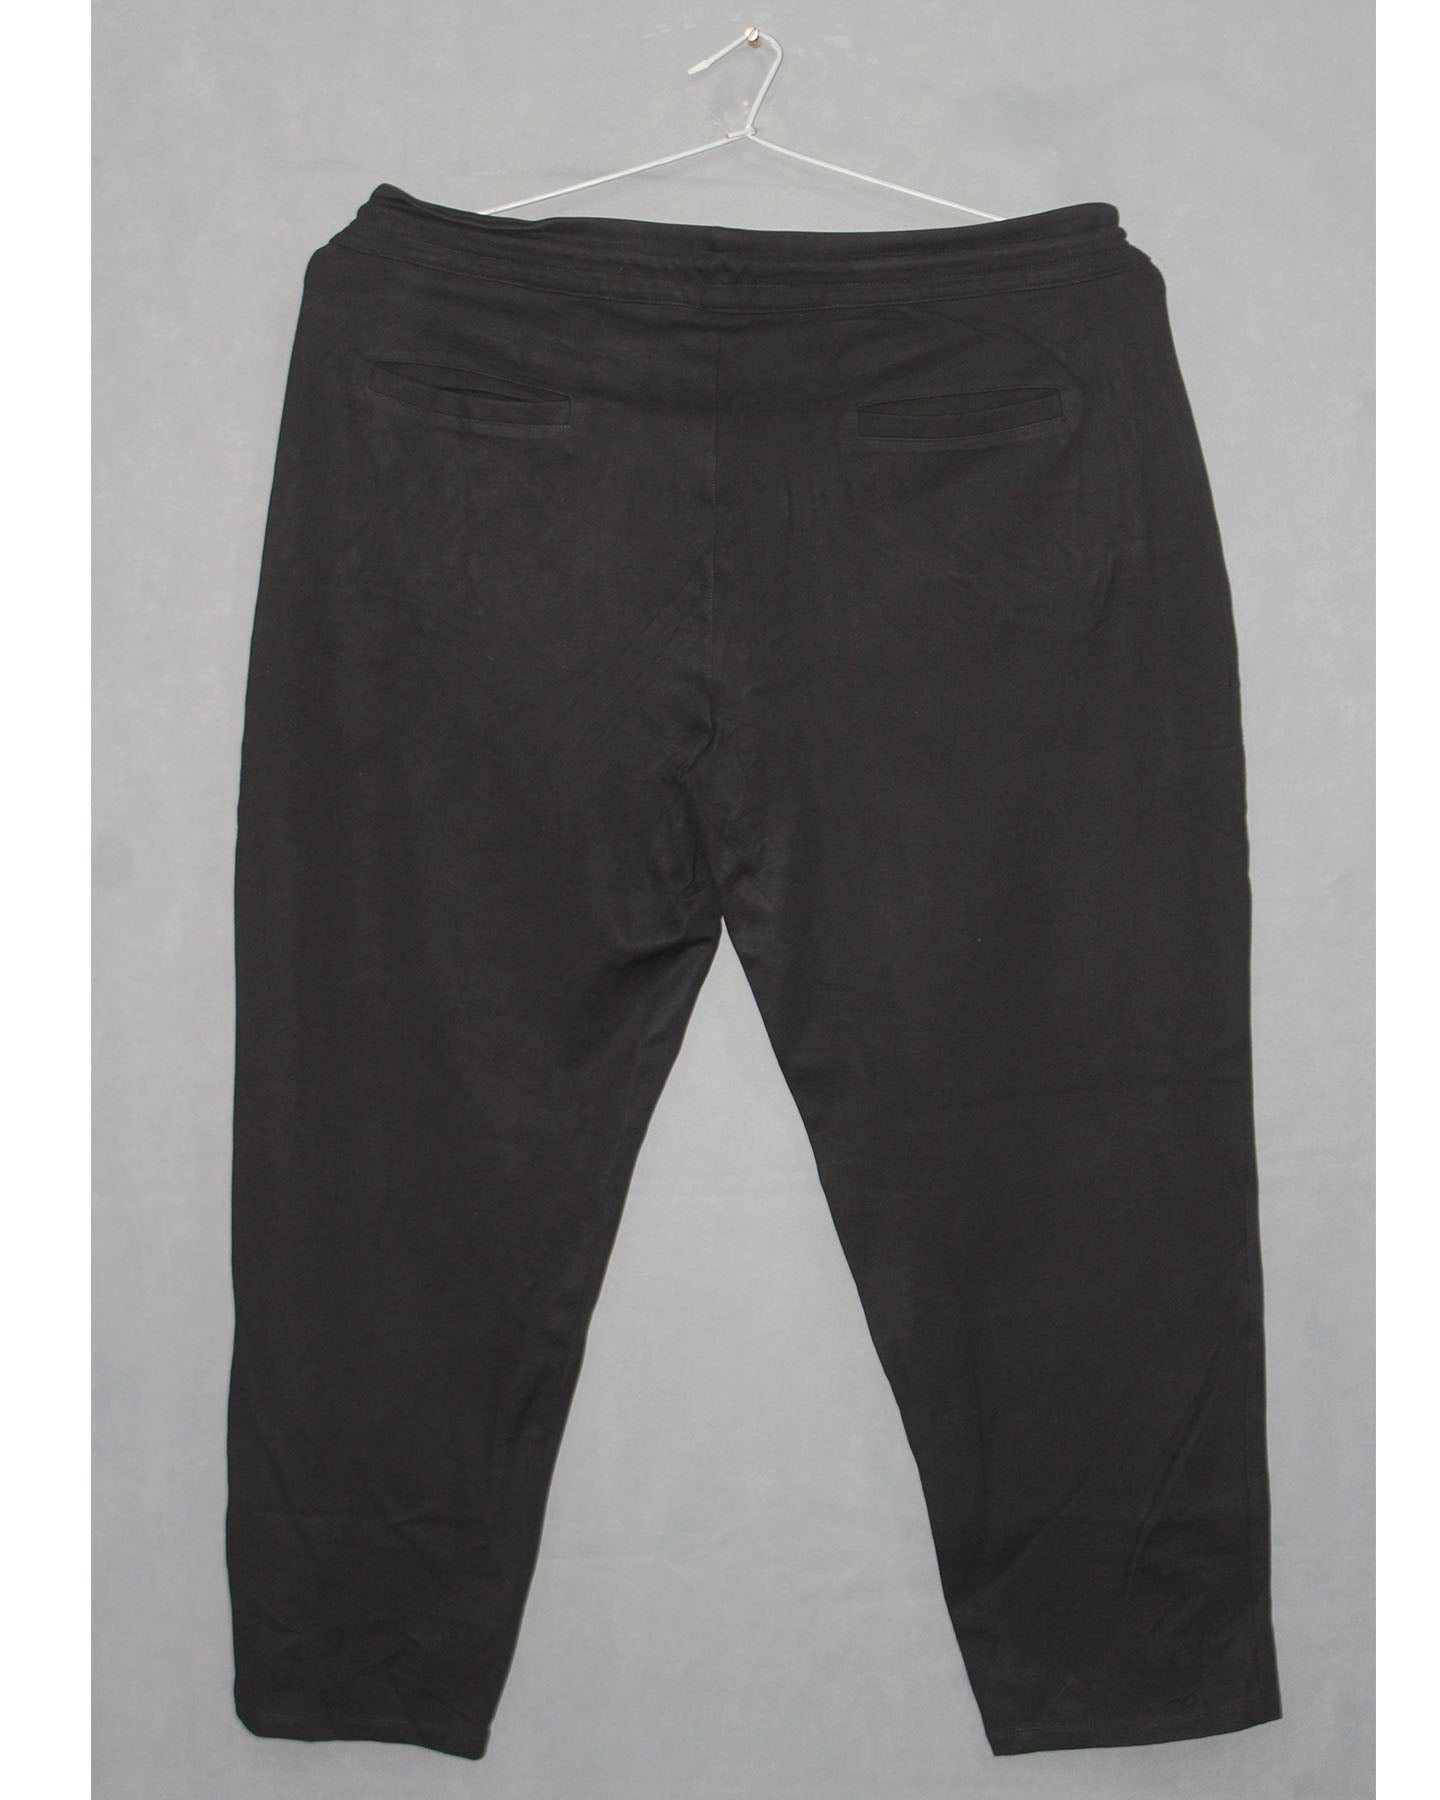 M&S Branded Original Polyester Jogger Trouser For Men